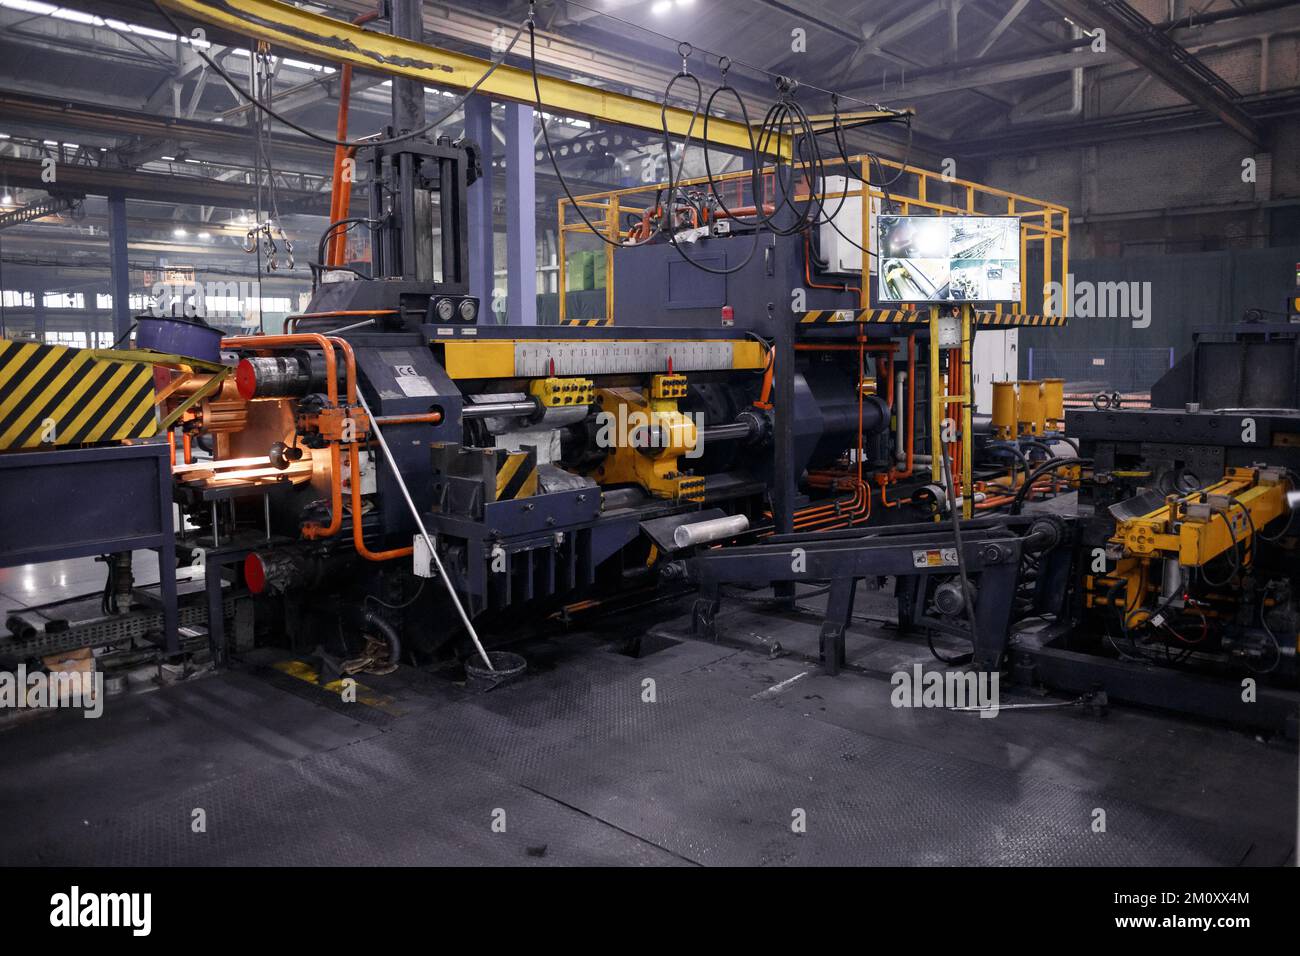 L'intérieur est un équipement moderne à l'usine, équipement expérimental. travailler avec du métal Banque D'Images